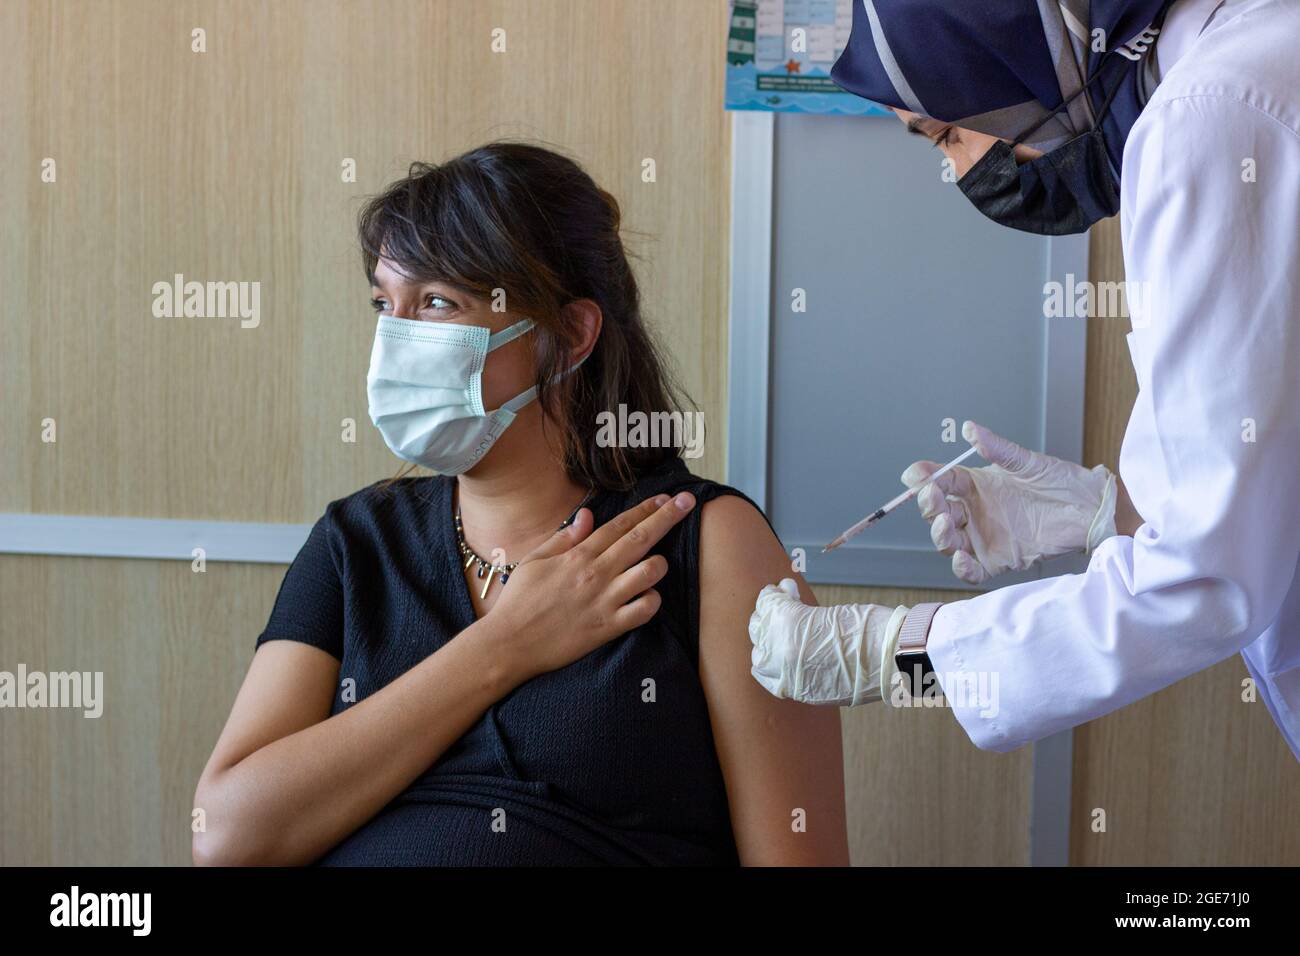 La femme enceinte se fait vacciner.Vaccin contre l'hépatite, la grippe, la diphtérie ou le covid.La femme avec enceinte évidente.Femme musulmane Docteur ou infirmière main. Banque D'Images